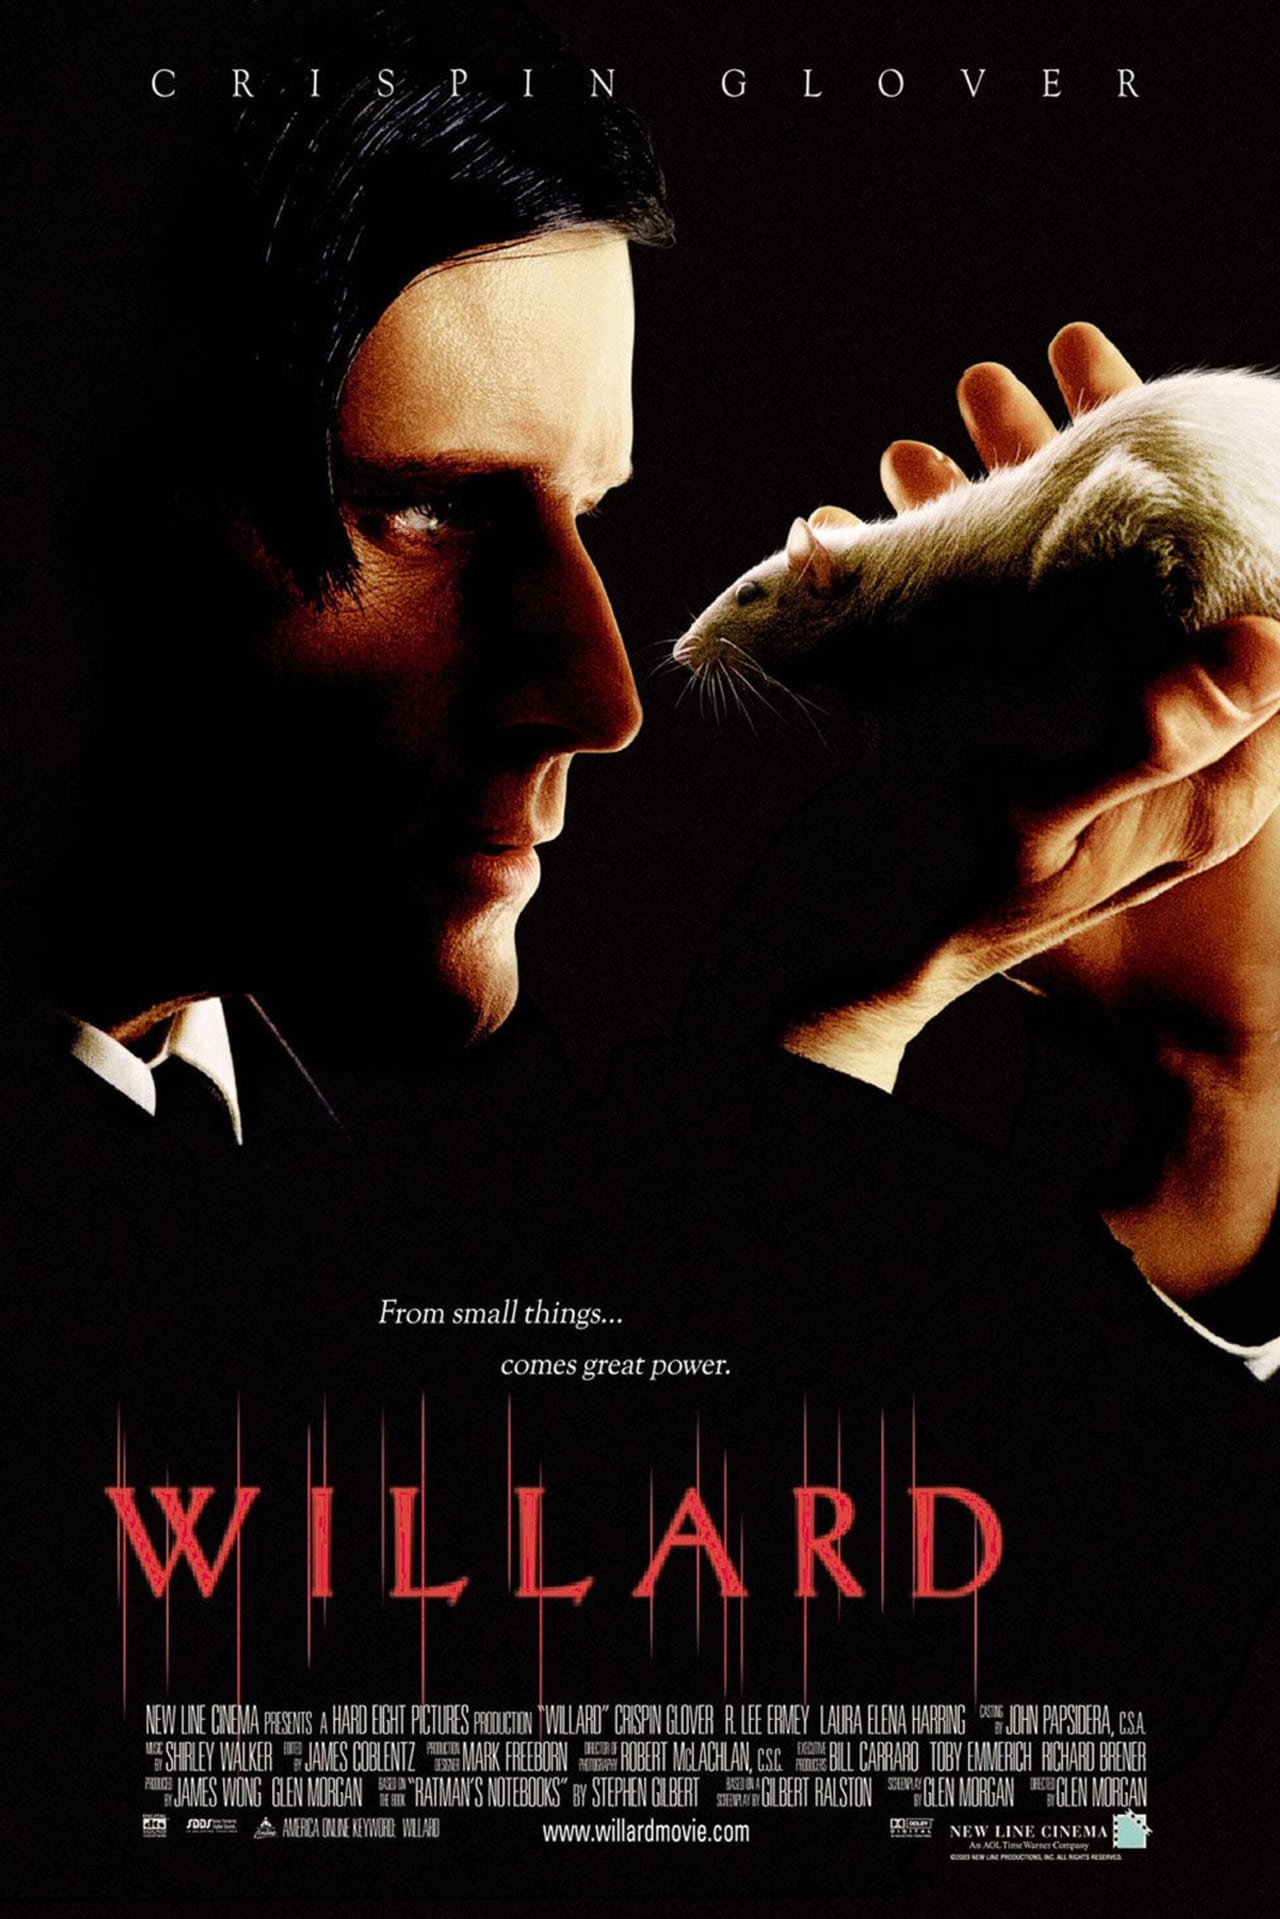 Willard (2003) 384Kbps 23.976Fps 48Khz 5.1Ch iTunes Turkish Audio TAC